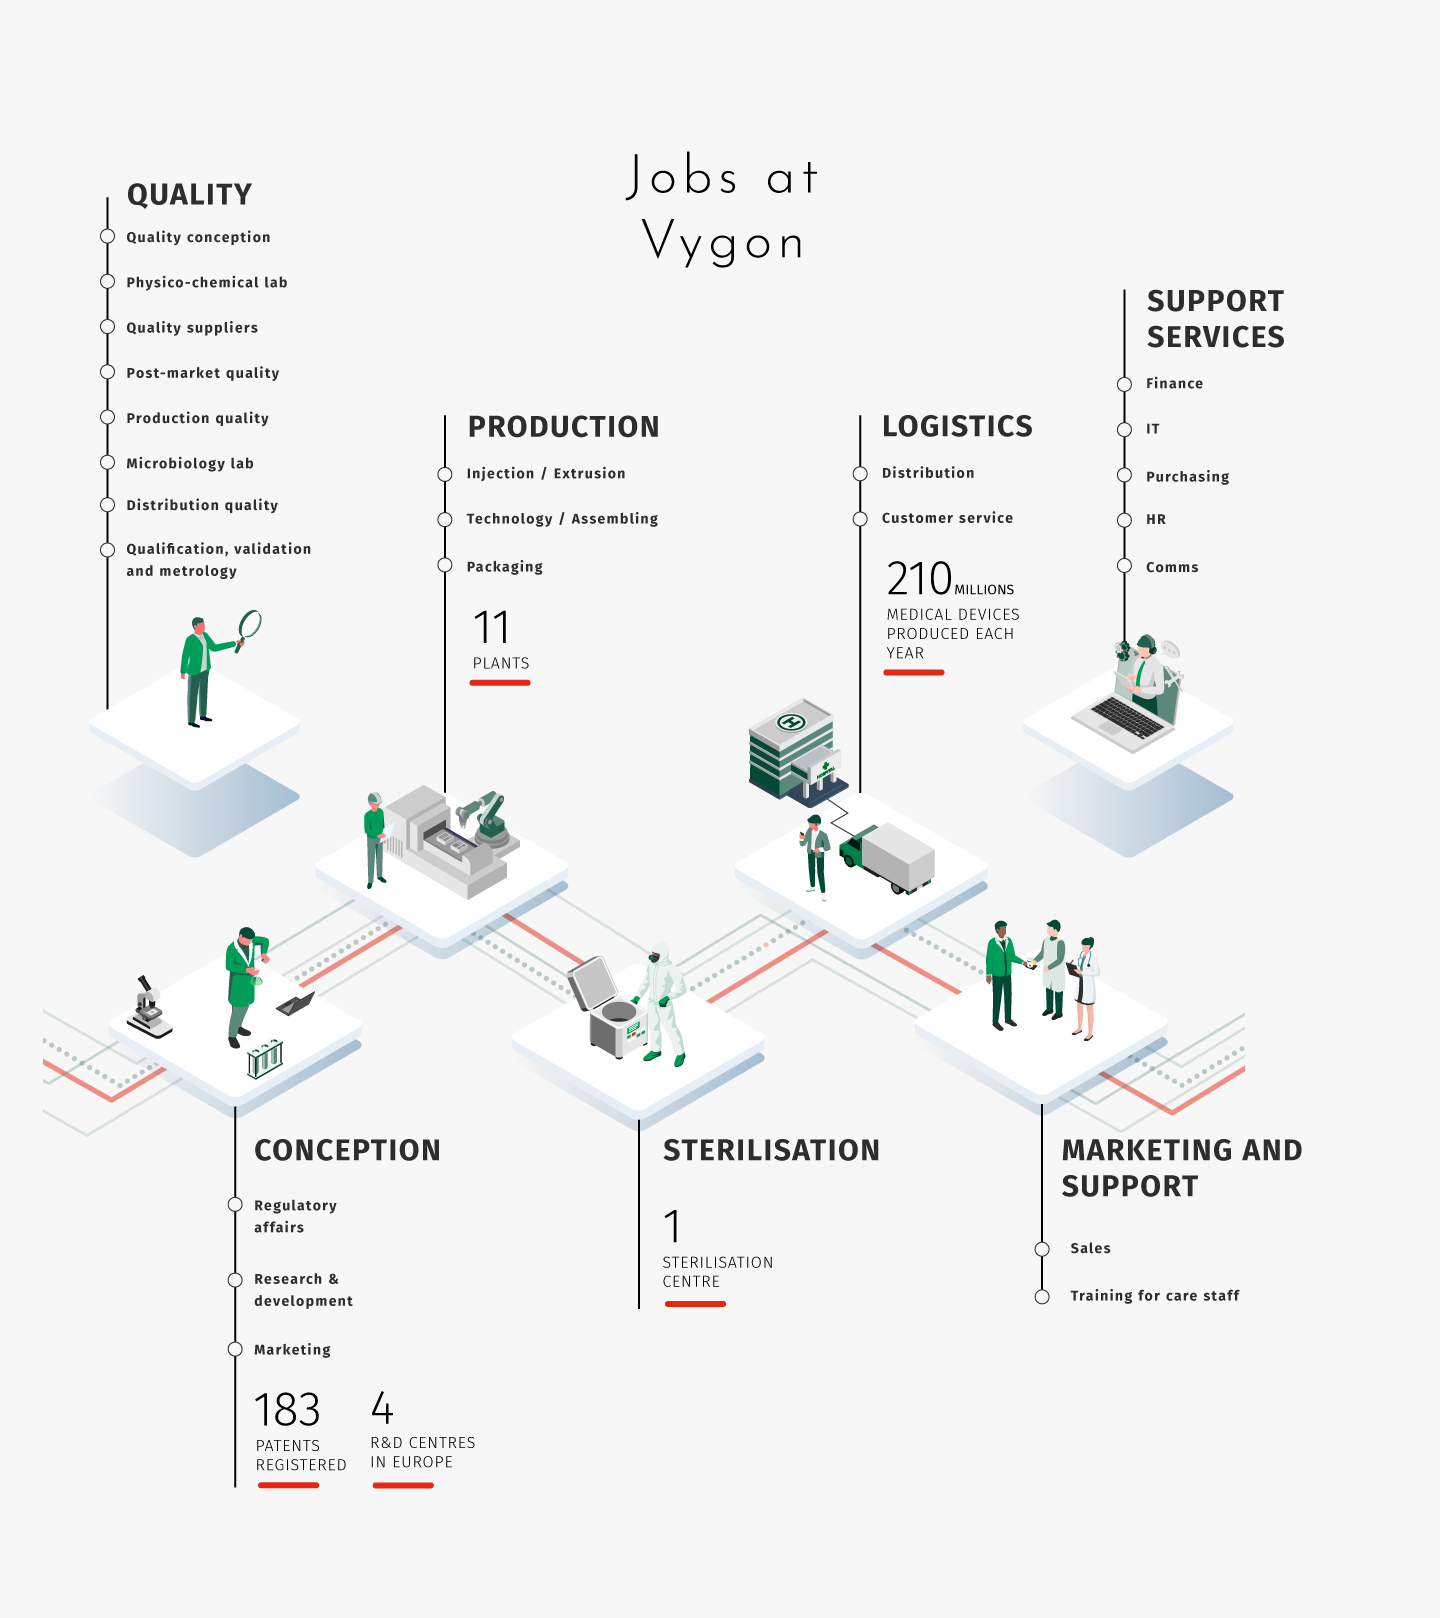 Jobs at Vygon 